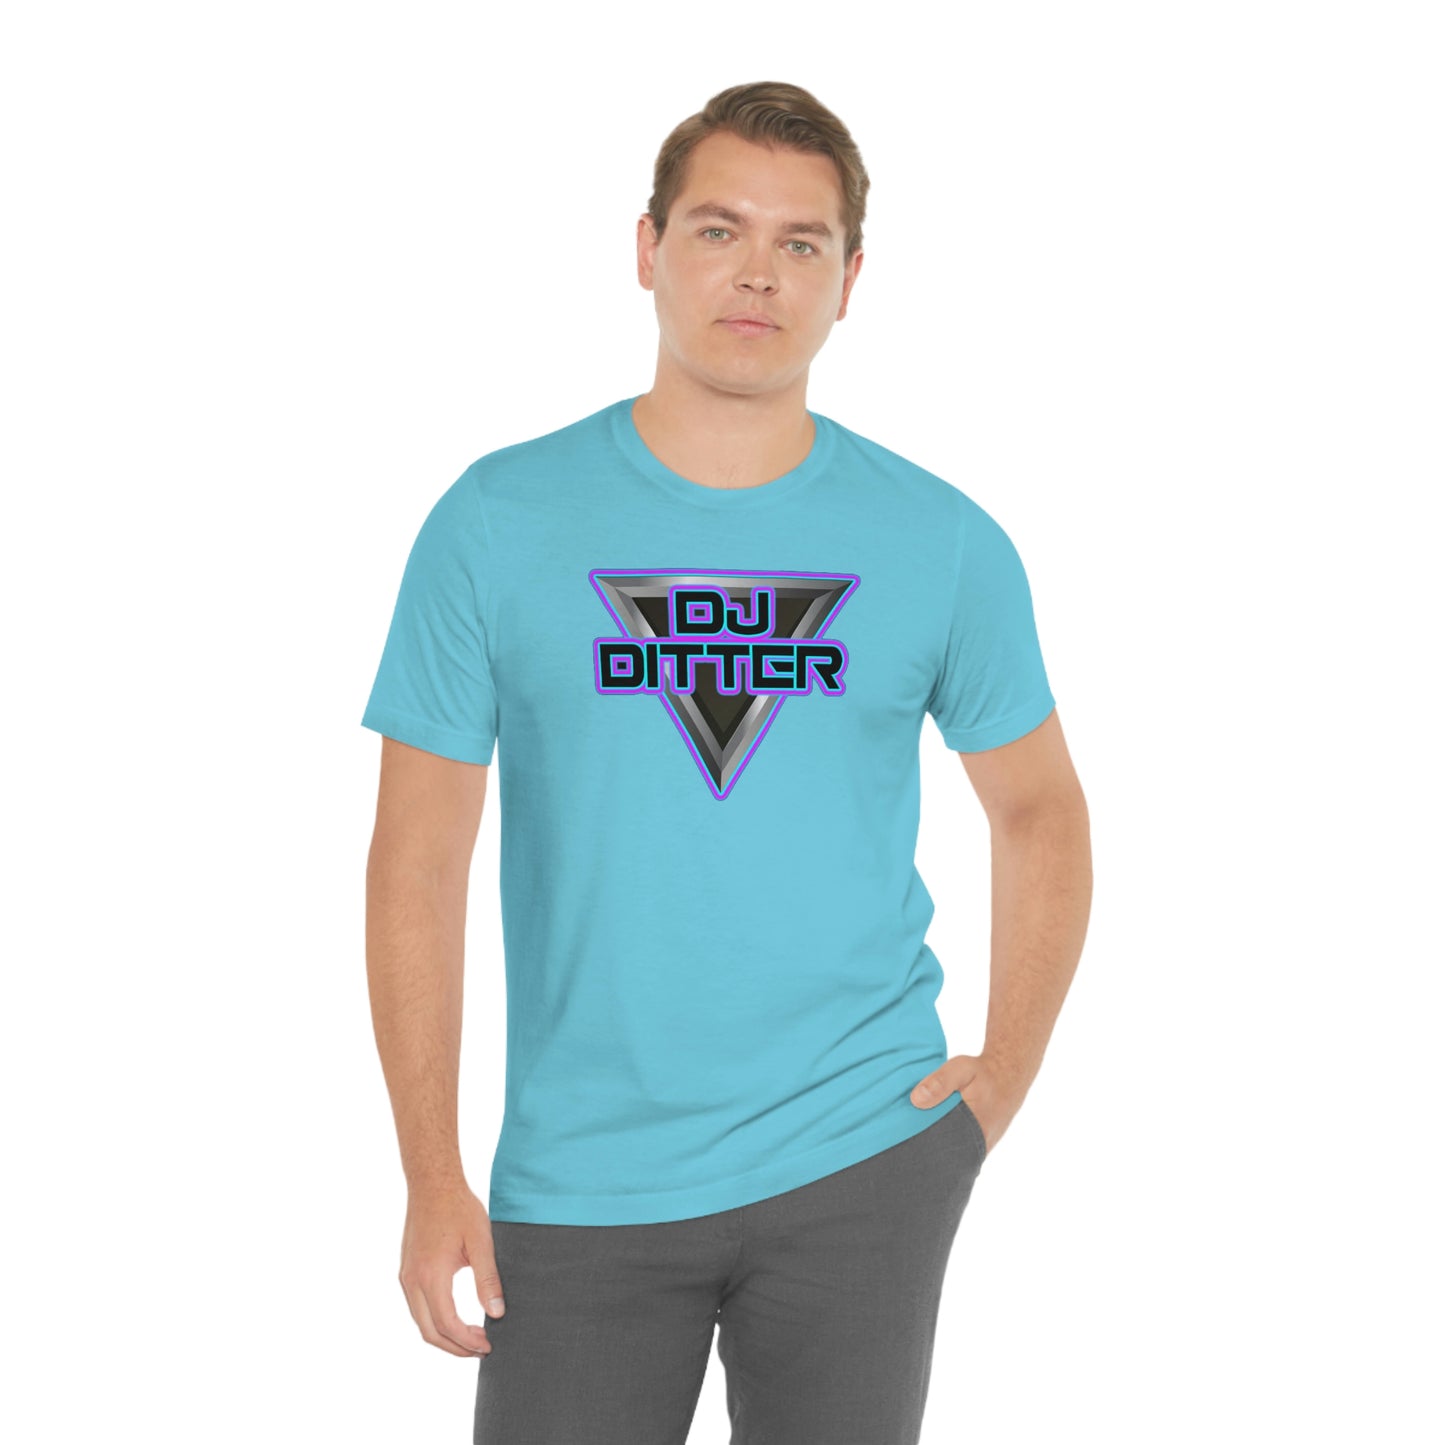 Dj Ditter Unisex T-Shirt